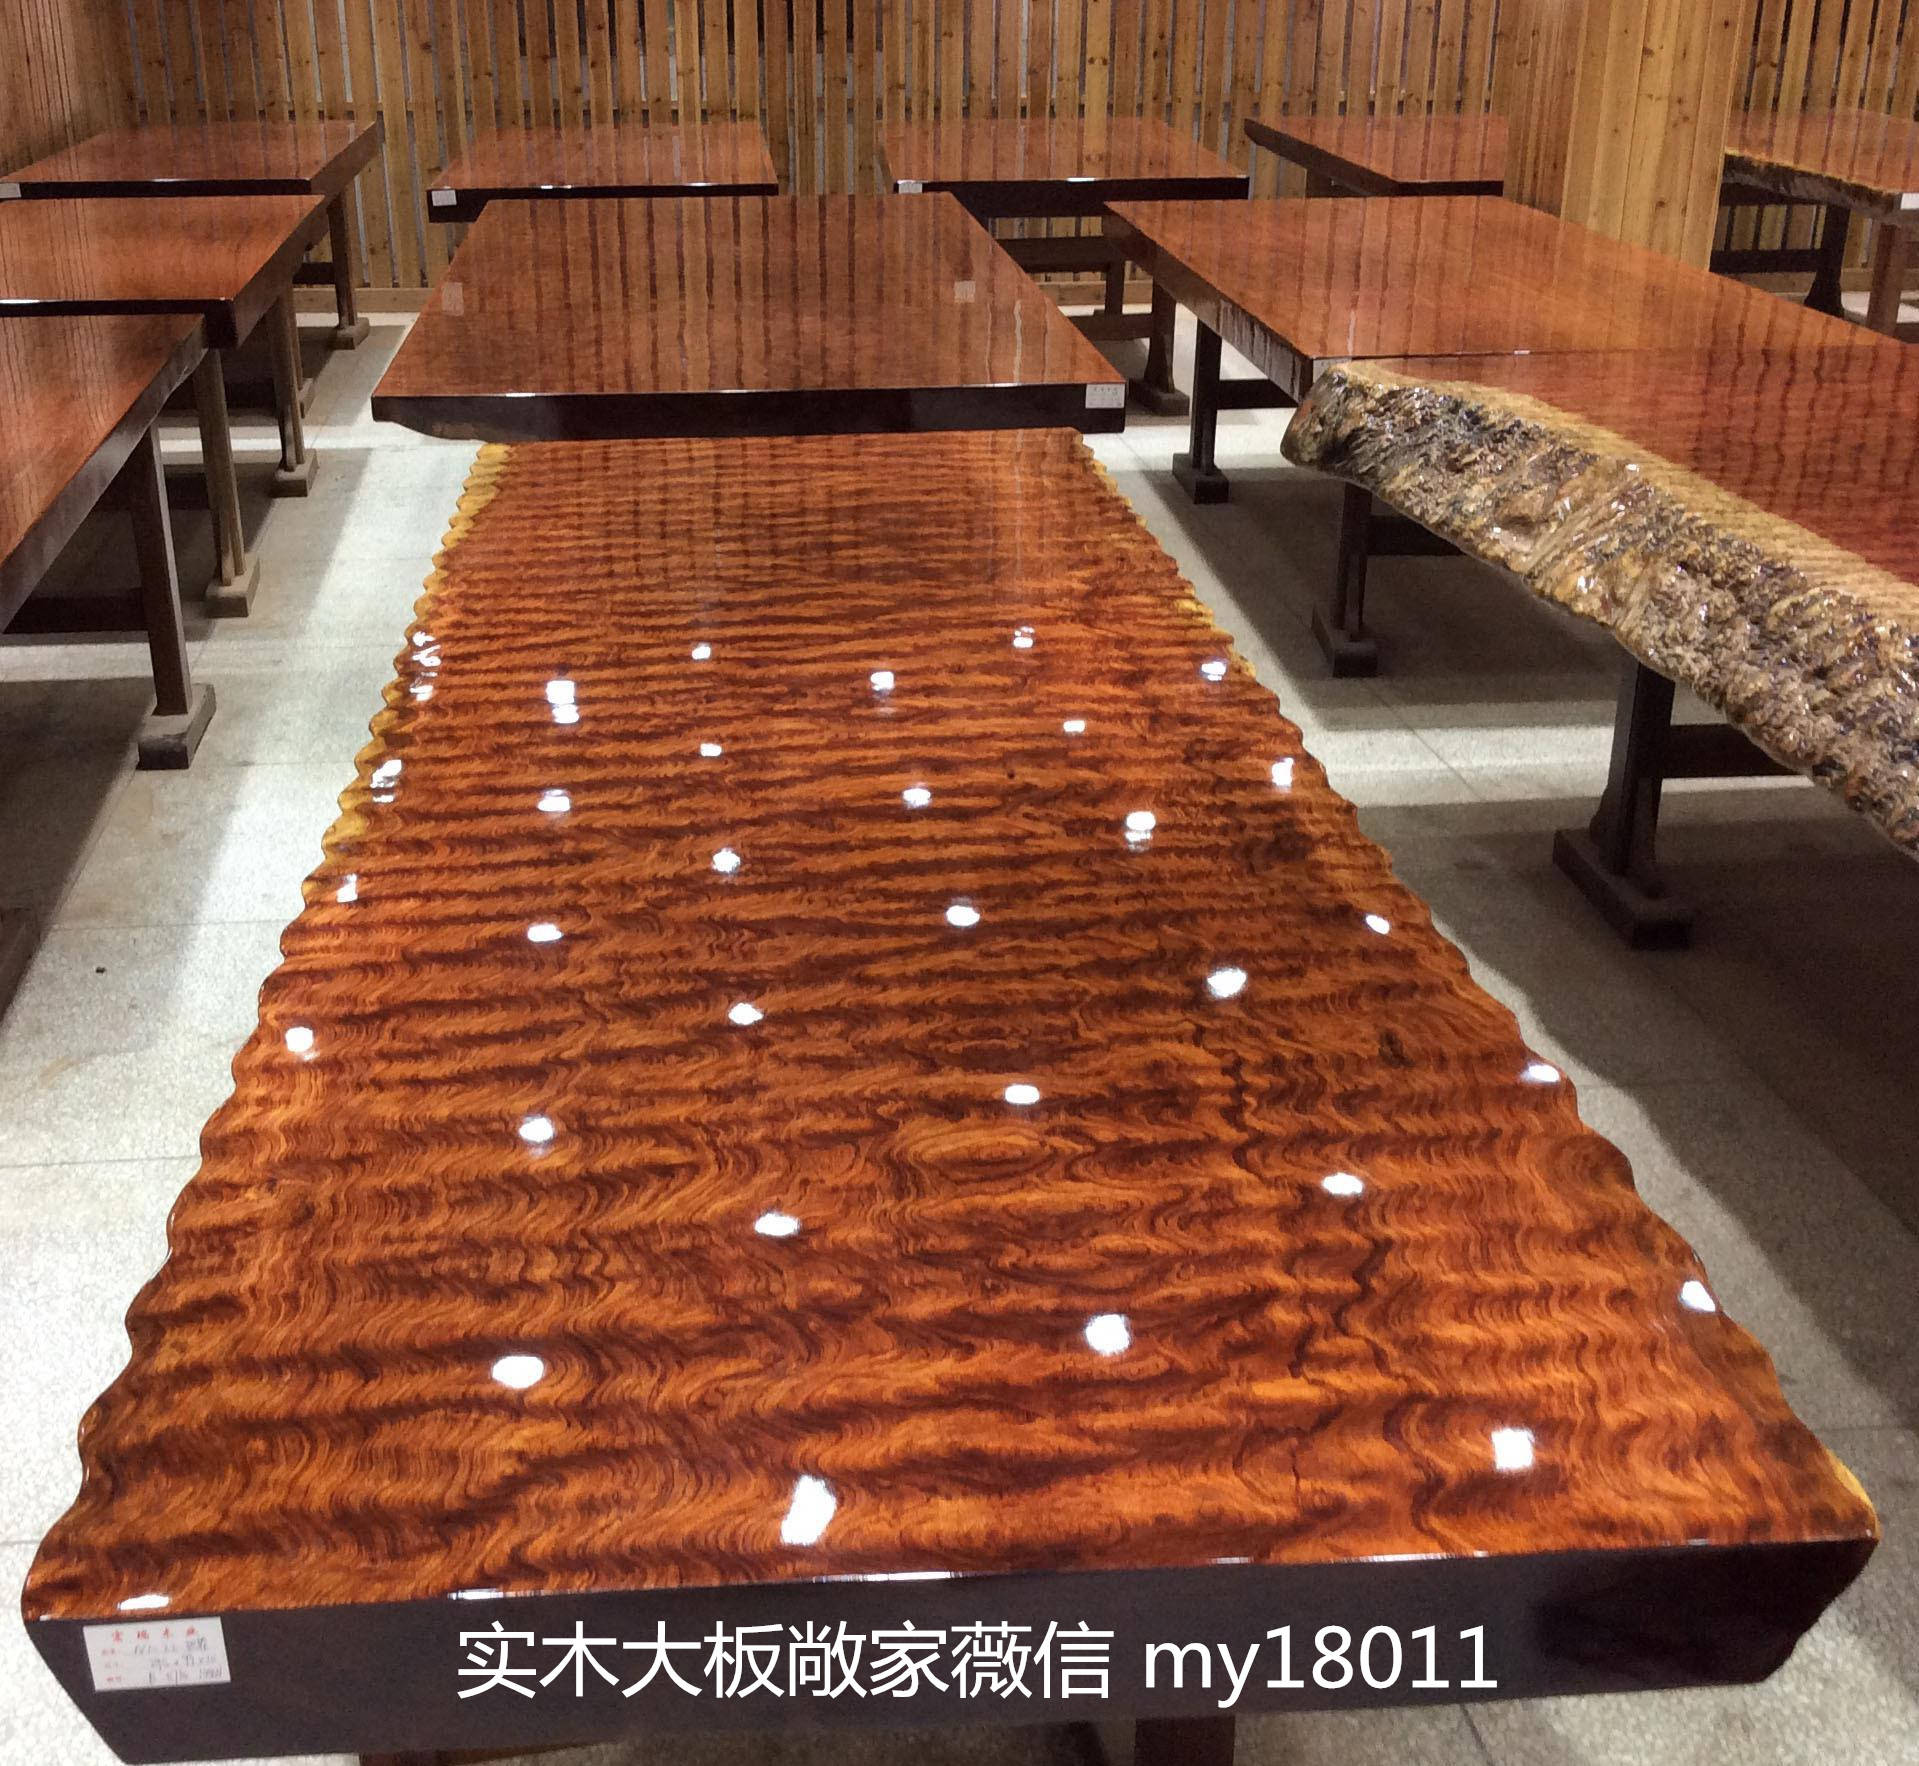 巴花真的是最高端的实木大板茶桌吗?